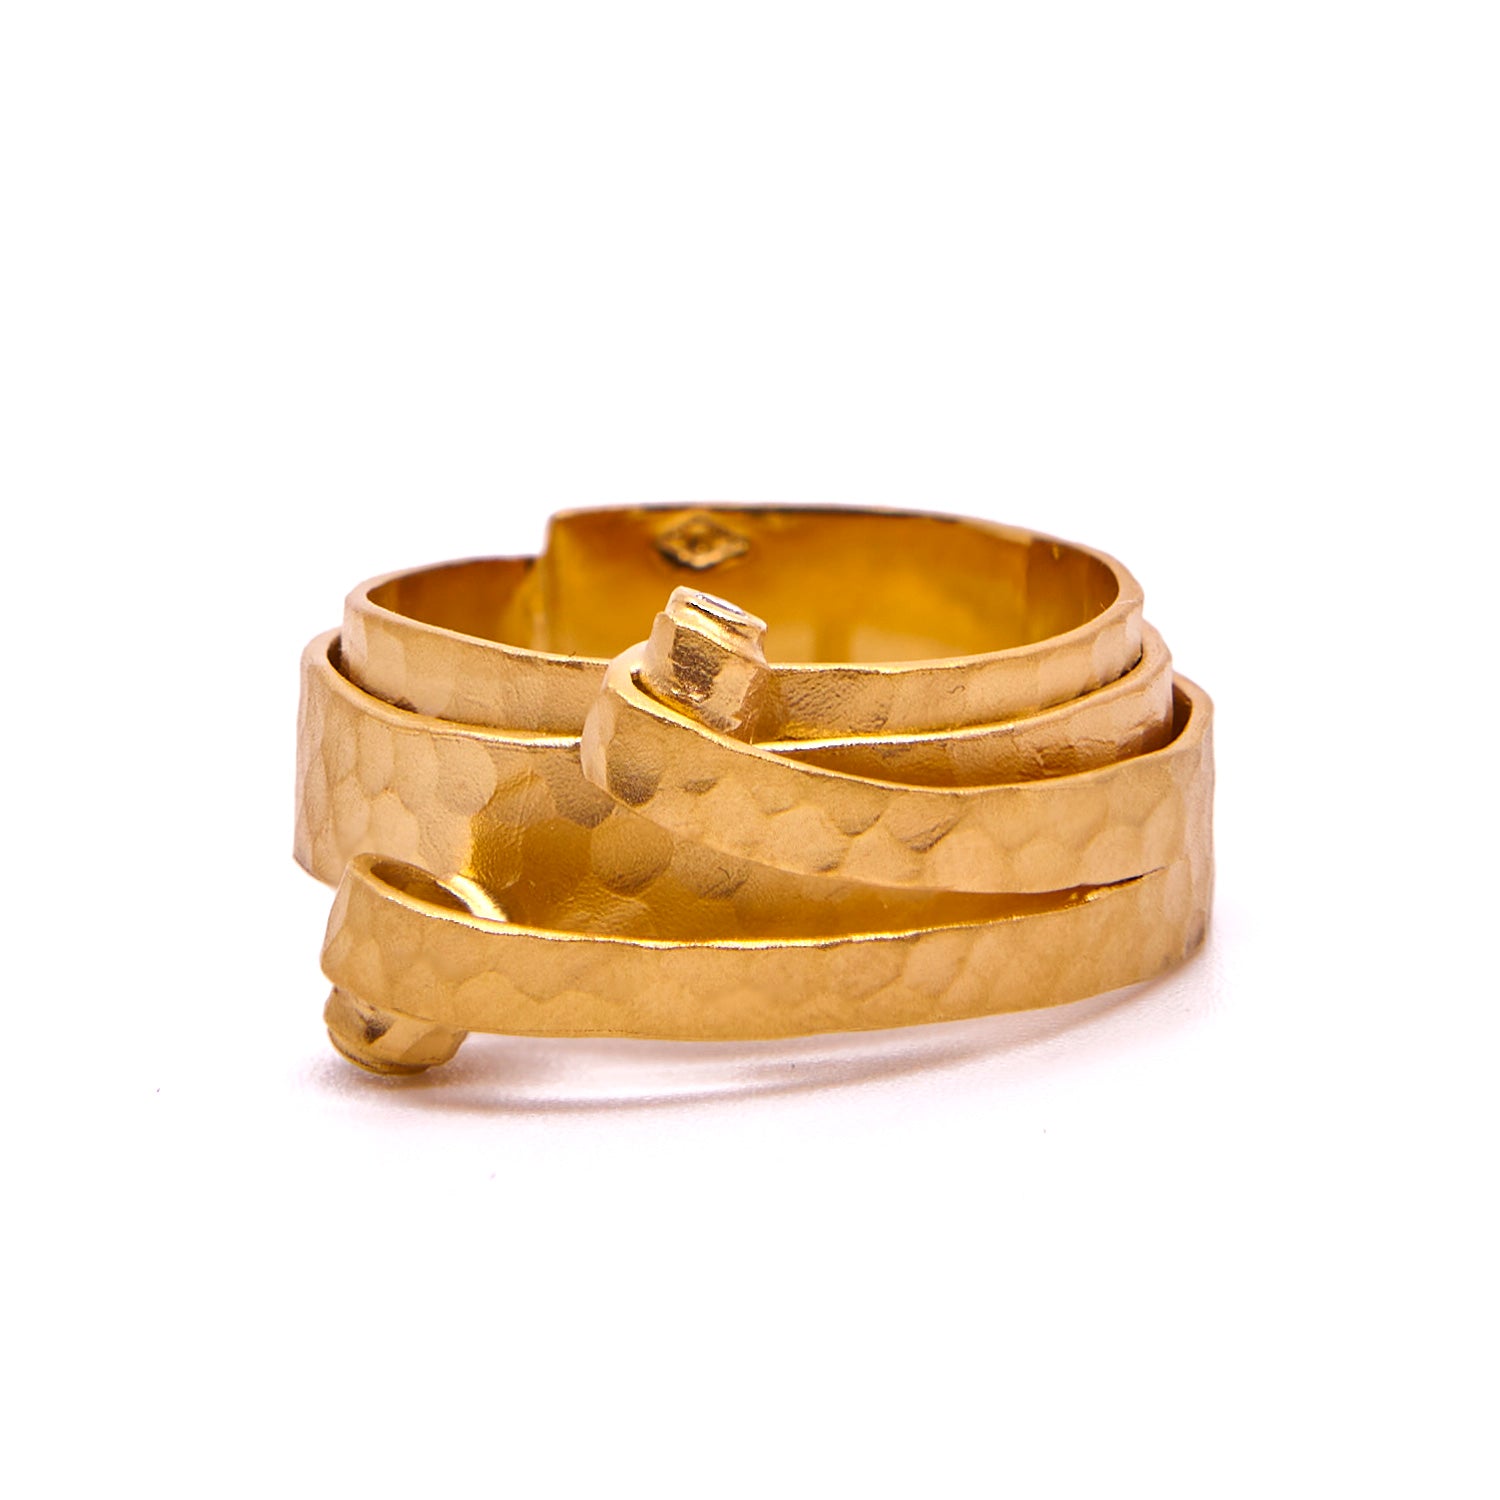 Gehämmerter Ring aus Gelbgold mit Locke